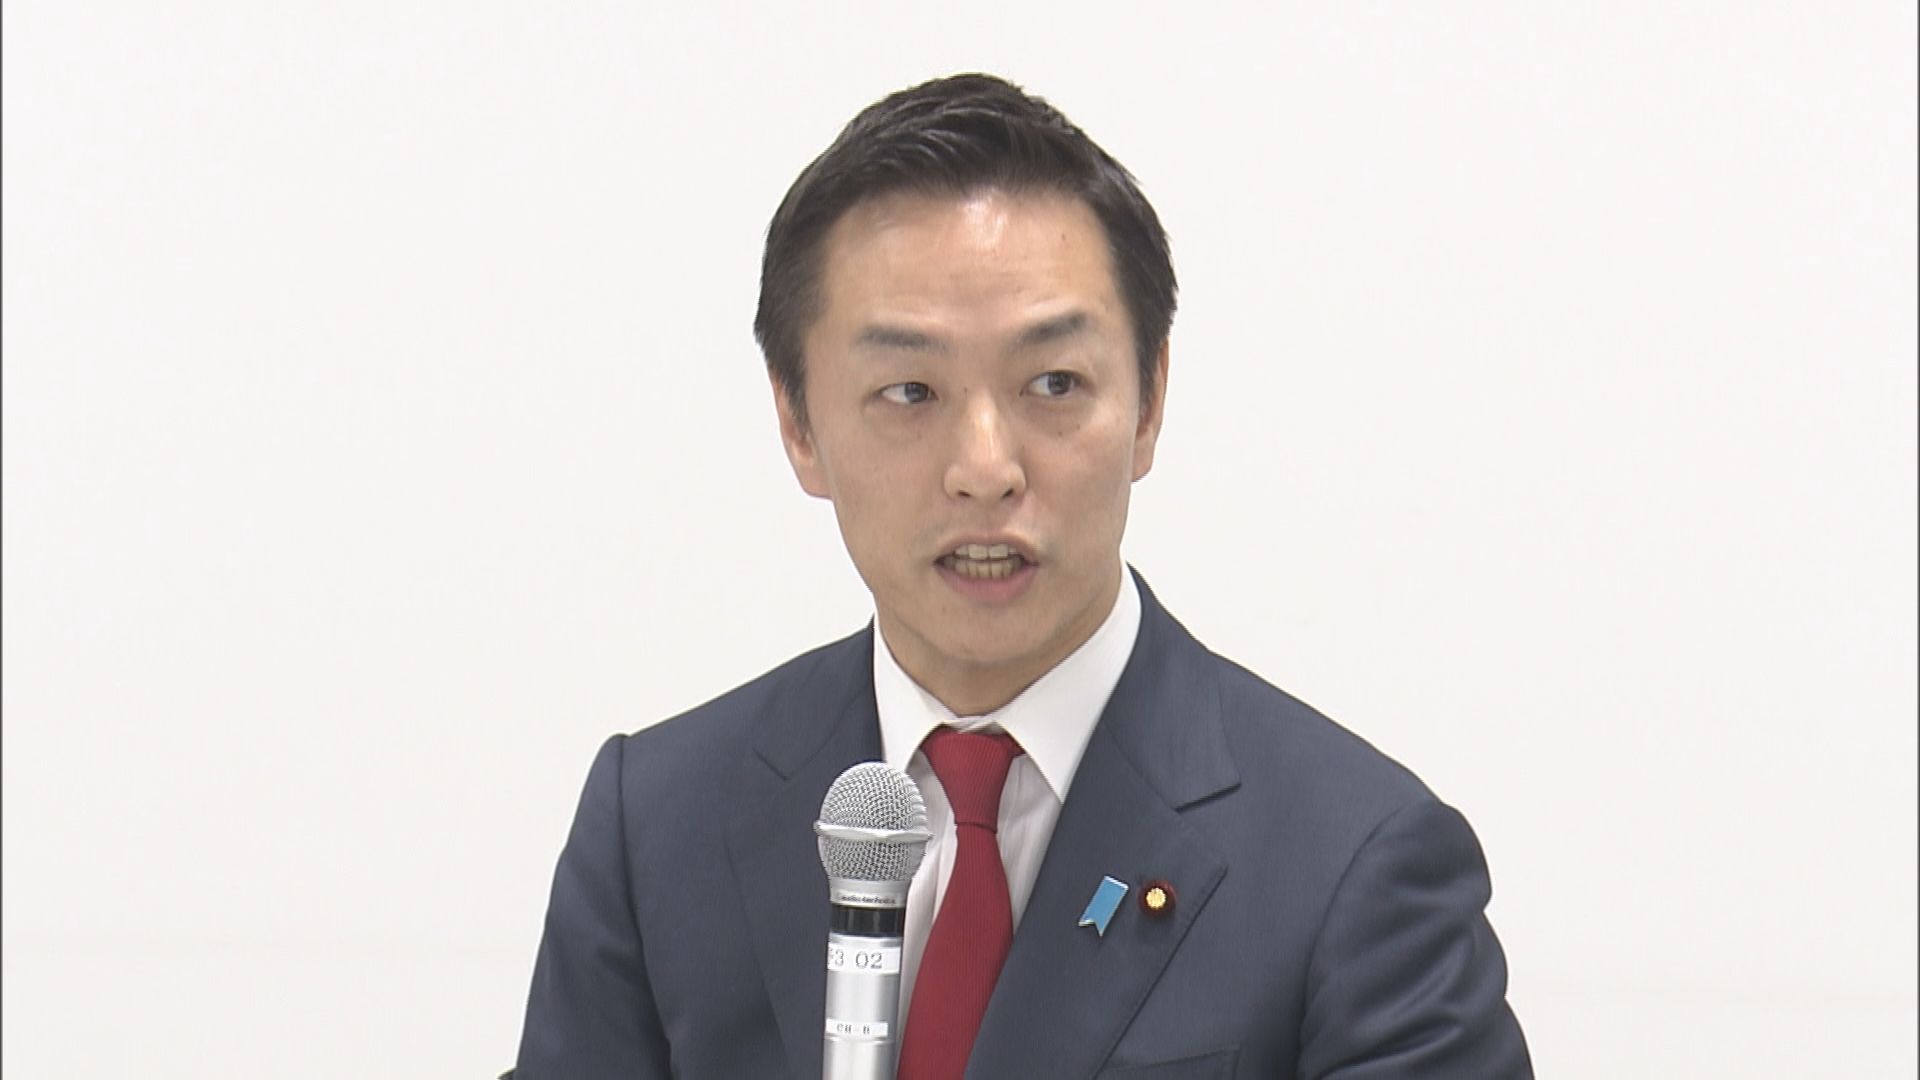 「ガードレールとしてリスク対応」村井総理補佐官、生成AIめぐりオープンAIなどと意見交換